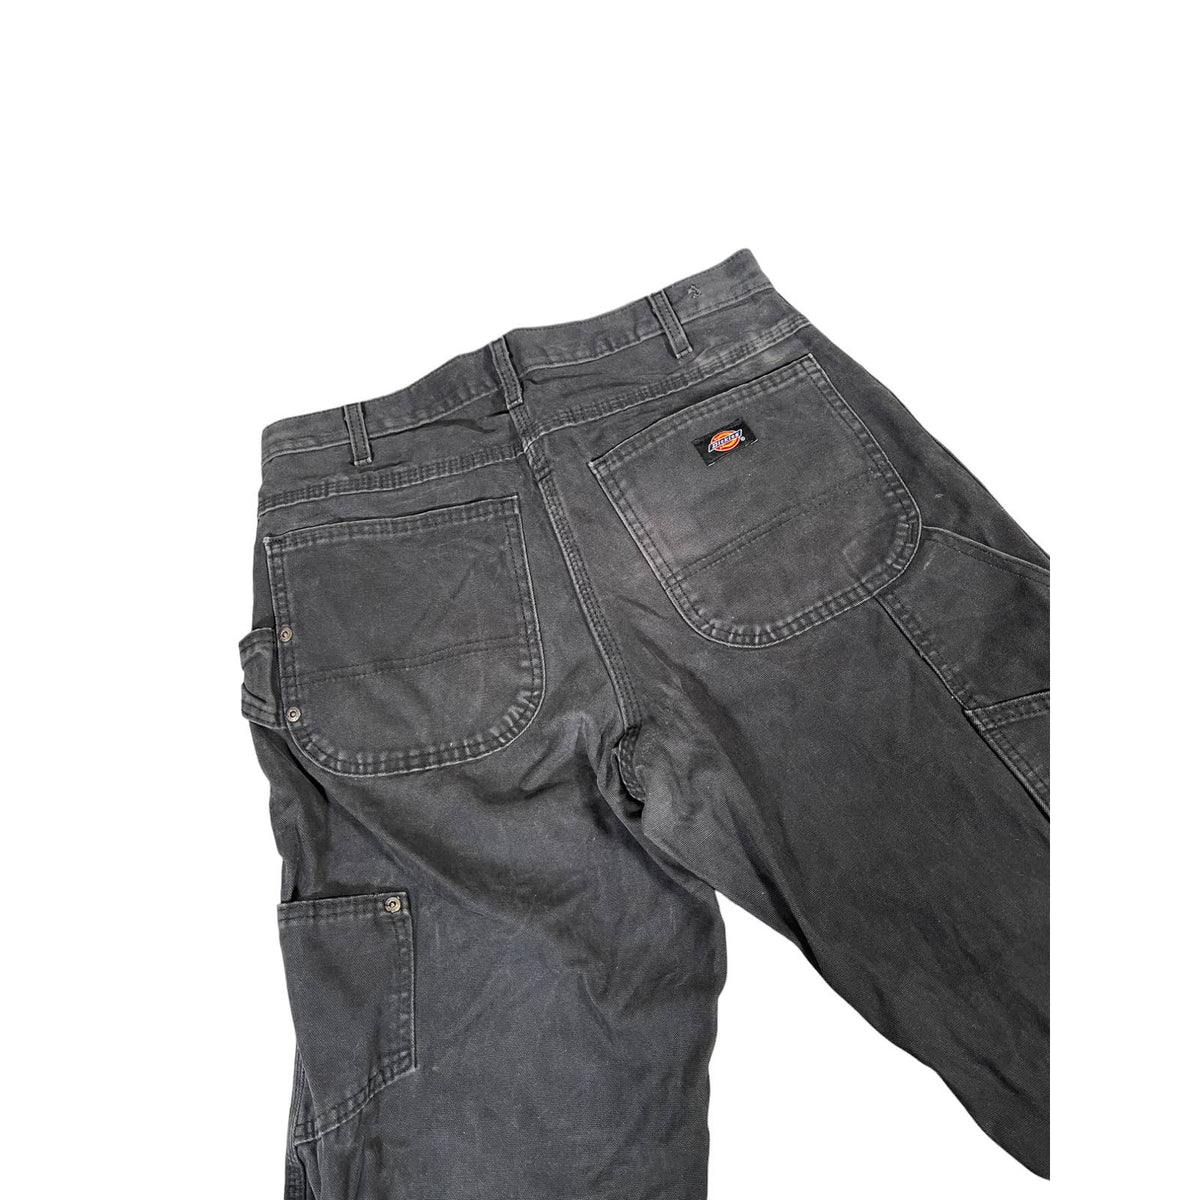 Vintage Dickies Distressed Black Carpenter Pants 32x34